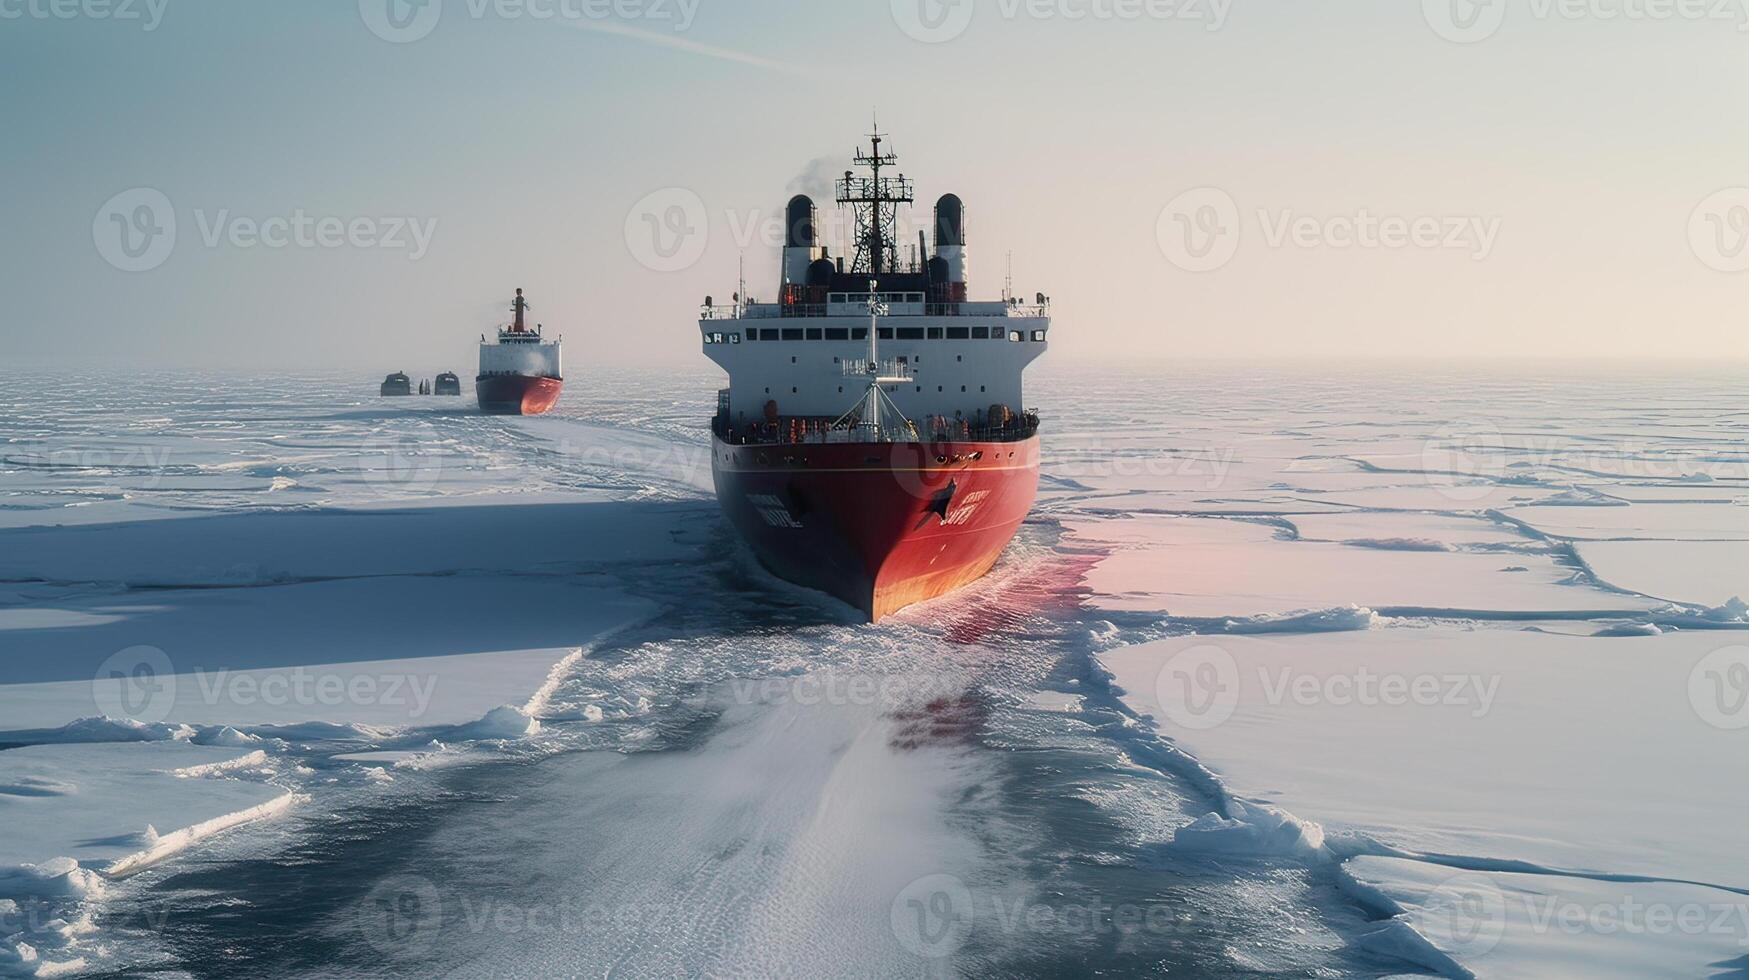 rompighiaccio nave su il ghiaccio nel il mare. generativo ai foto